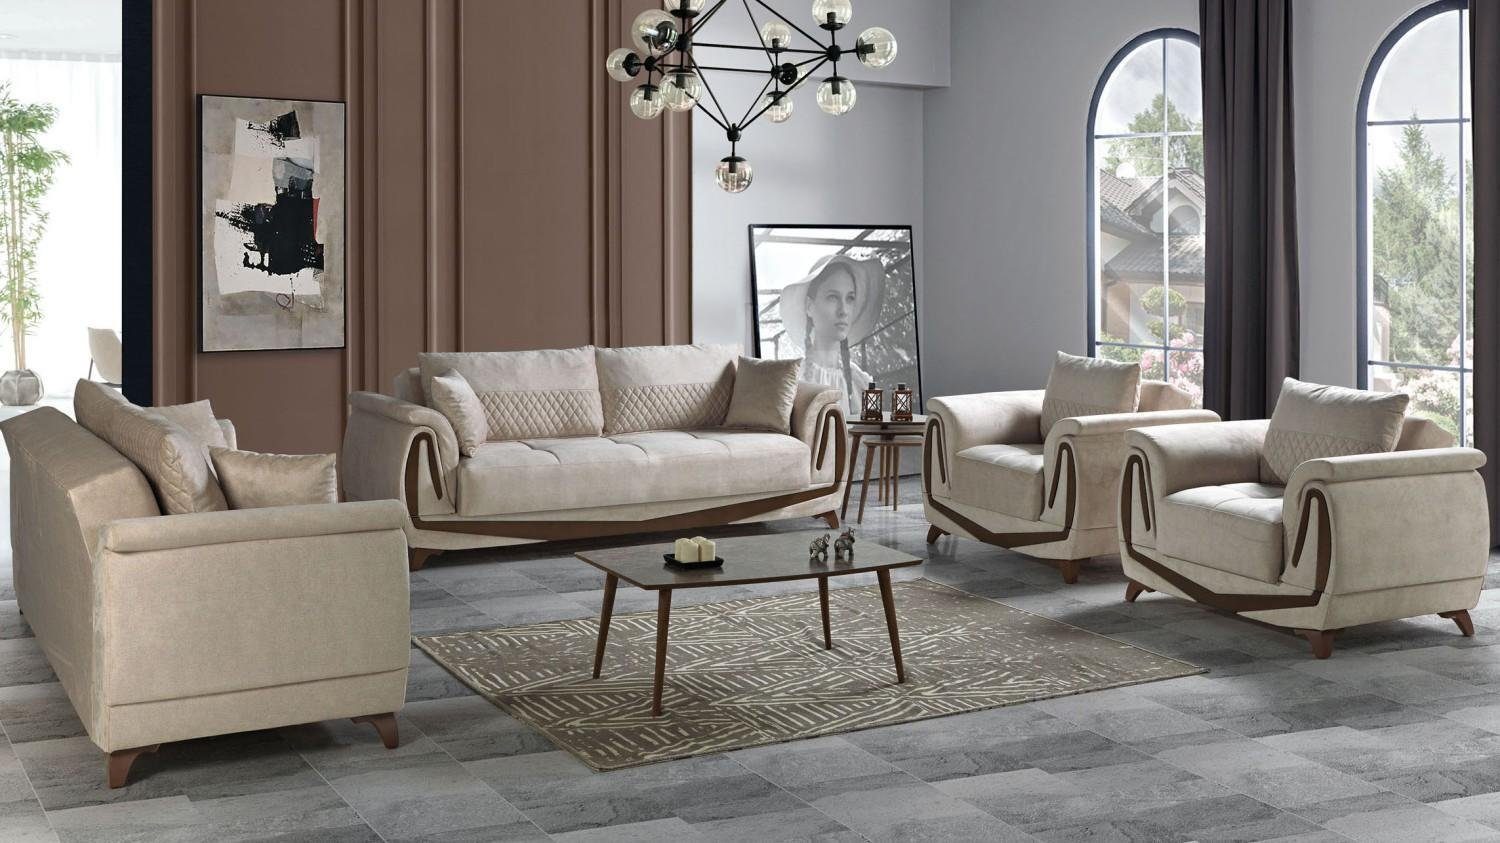 JVmoebel Wohnzimmer-Set Sofagarnitur 3+2+1+1 Holz Wohnzimmer Luxus Sofa Modern Stoff, (3 Sitzer / 2 Sitzer / 2x Sessel), Made In Europe